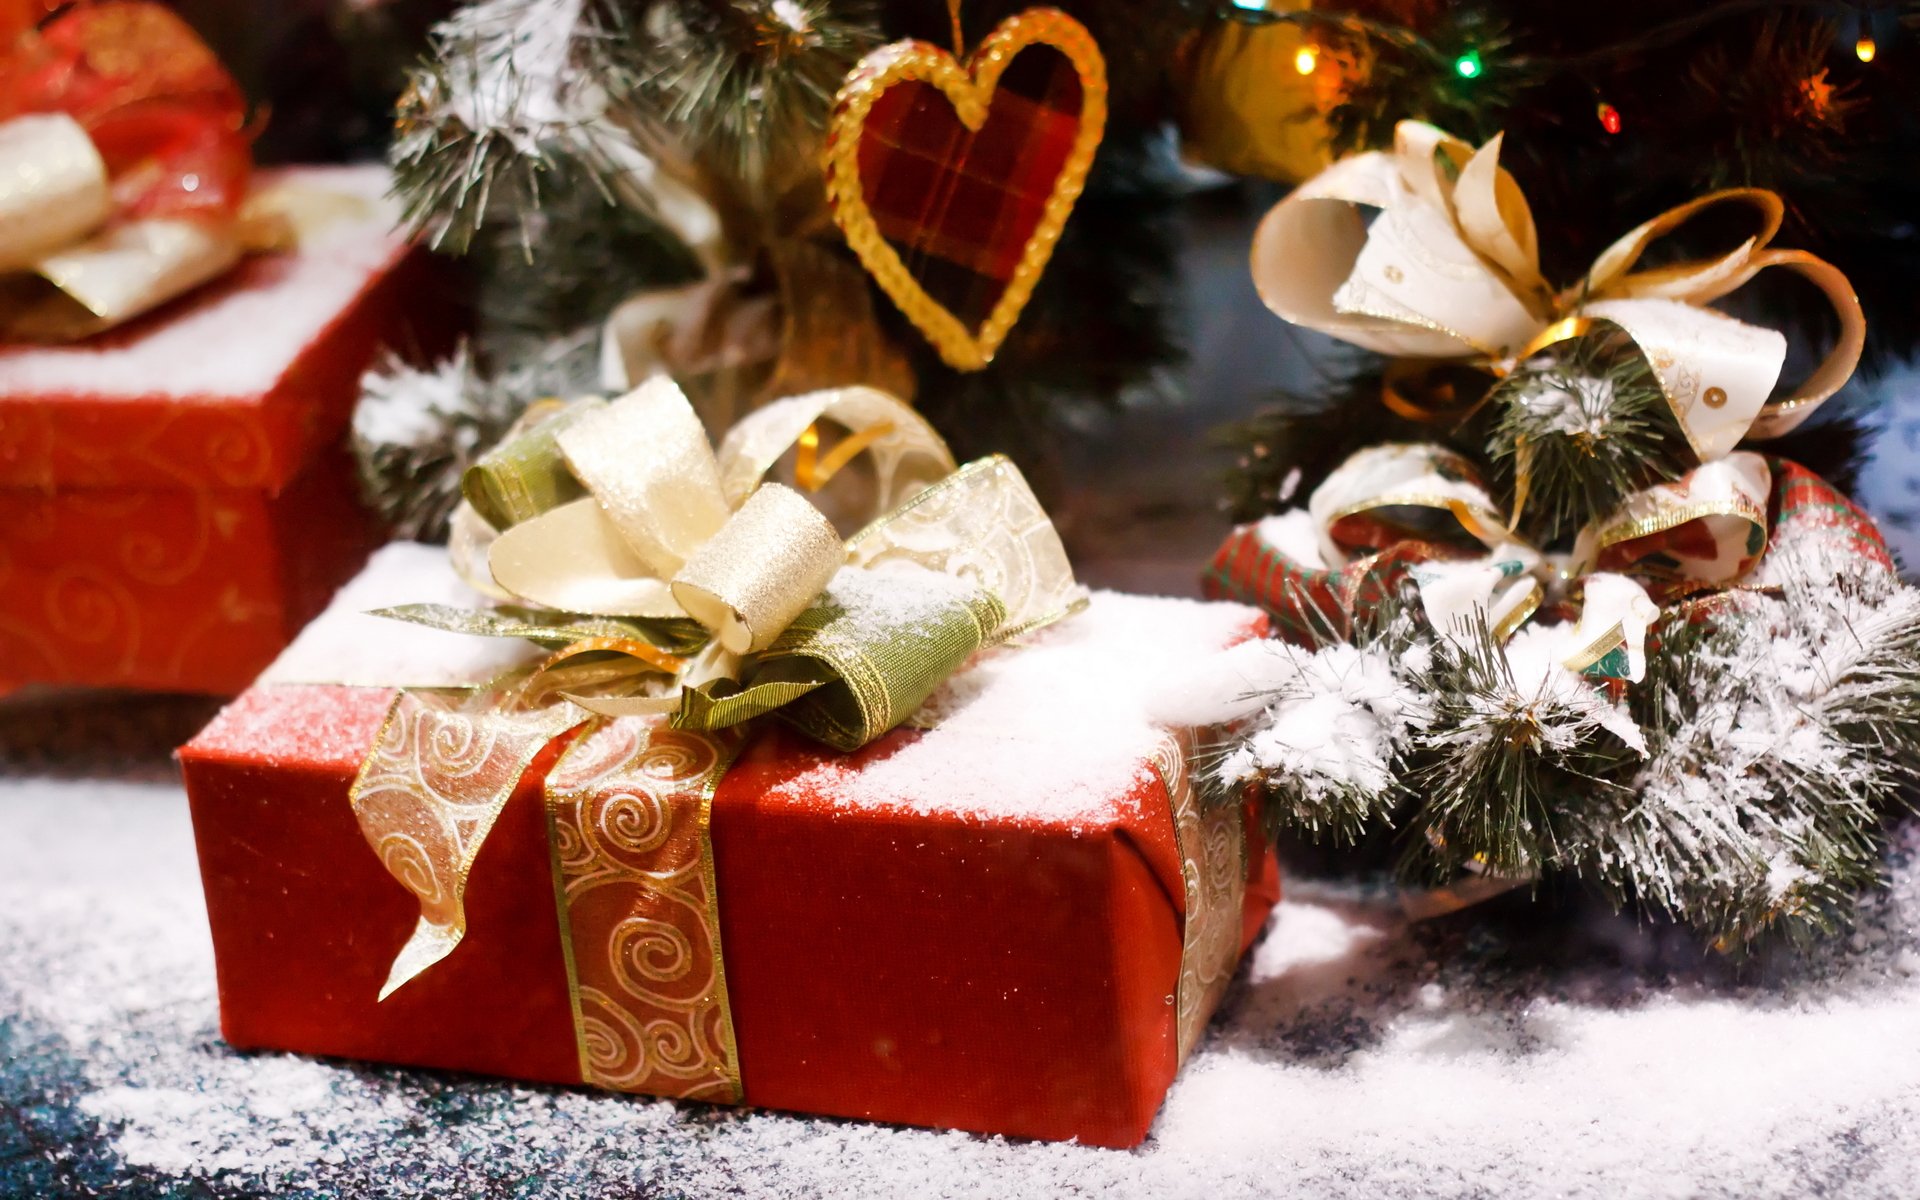 wakacje nowy rok prezent czerwone pudełko wstążka łuk świerk drzewo śnieg serce